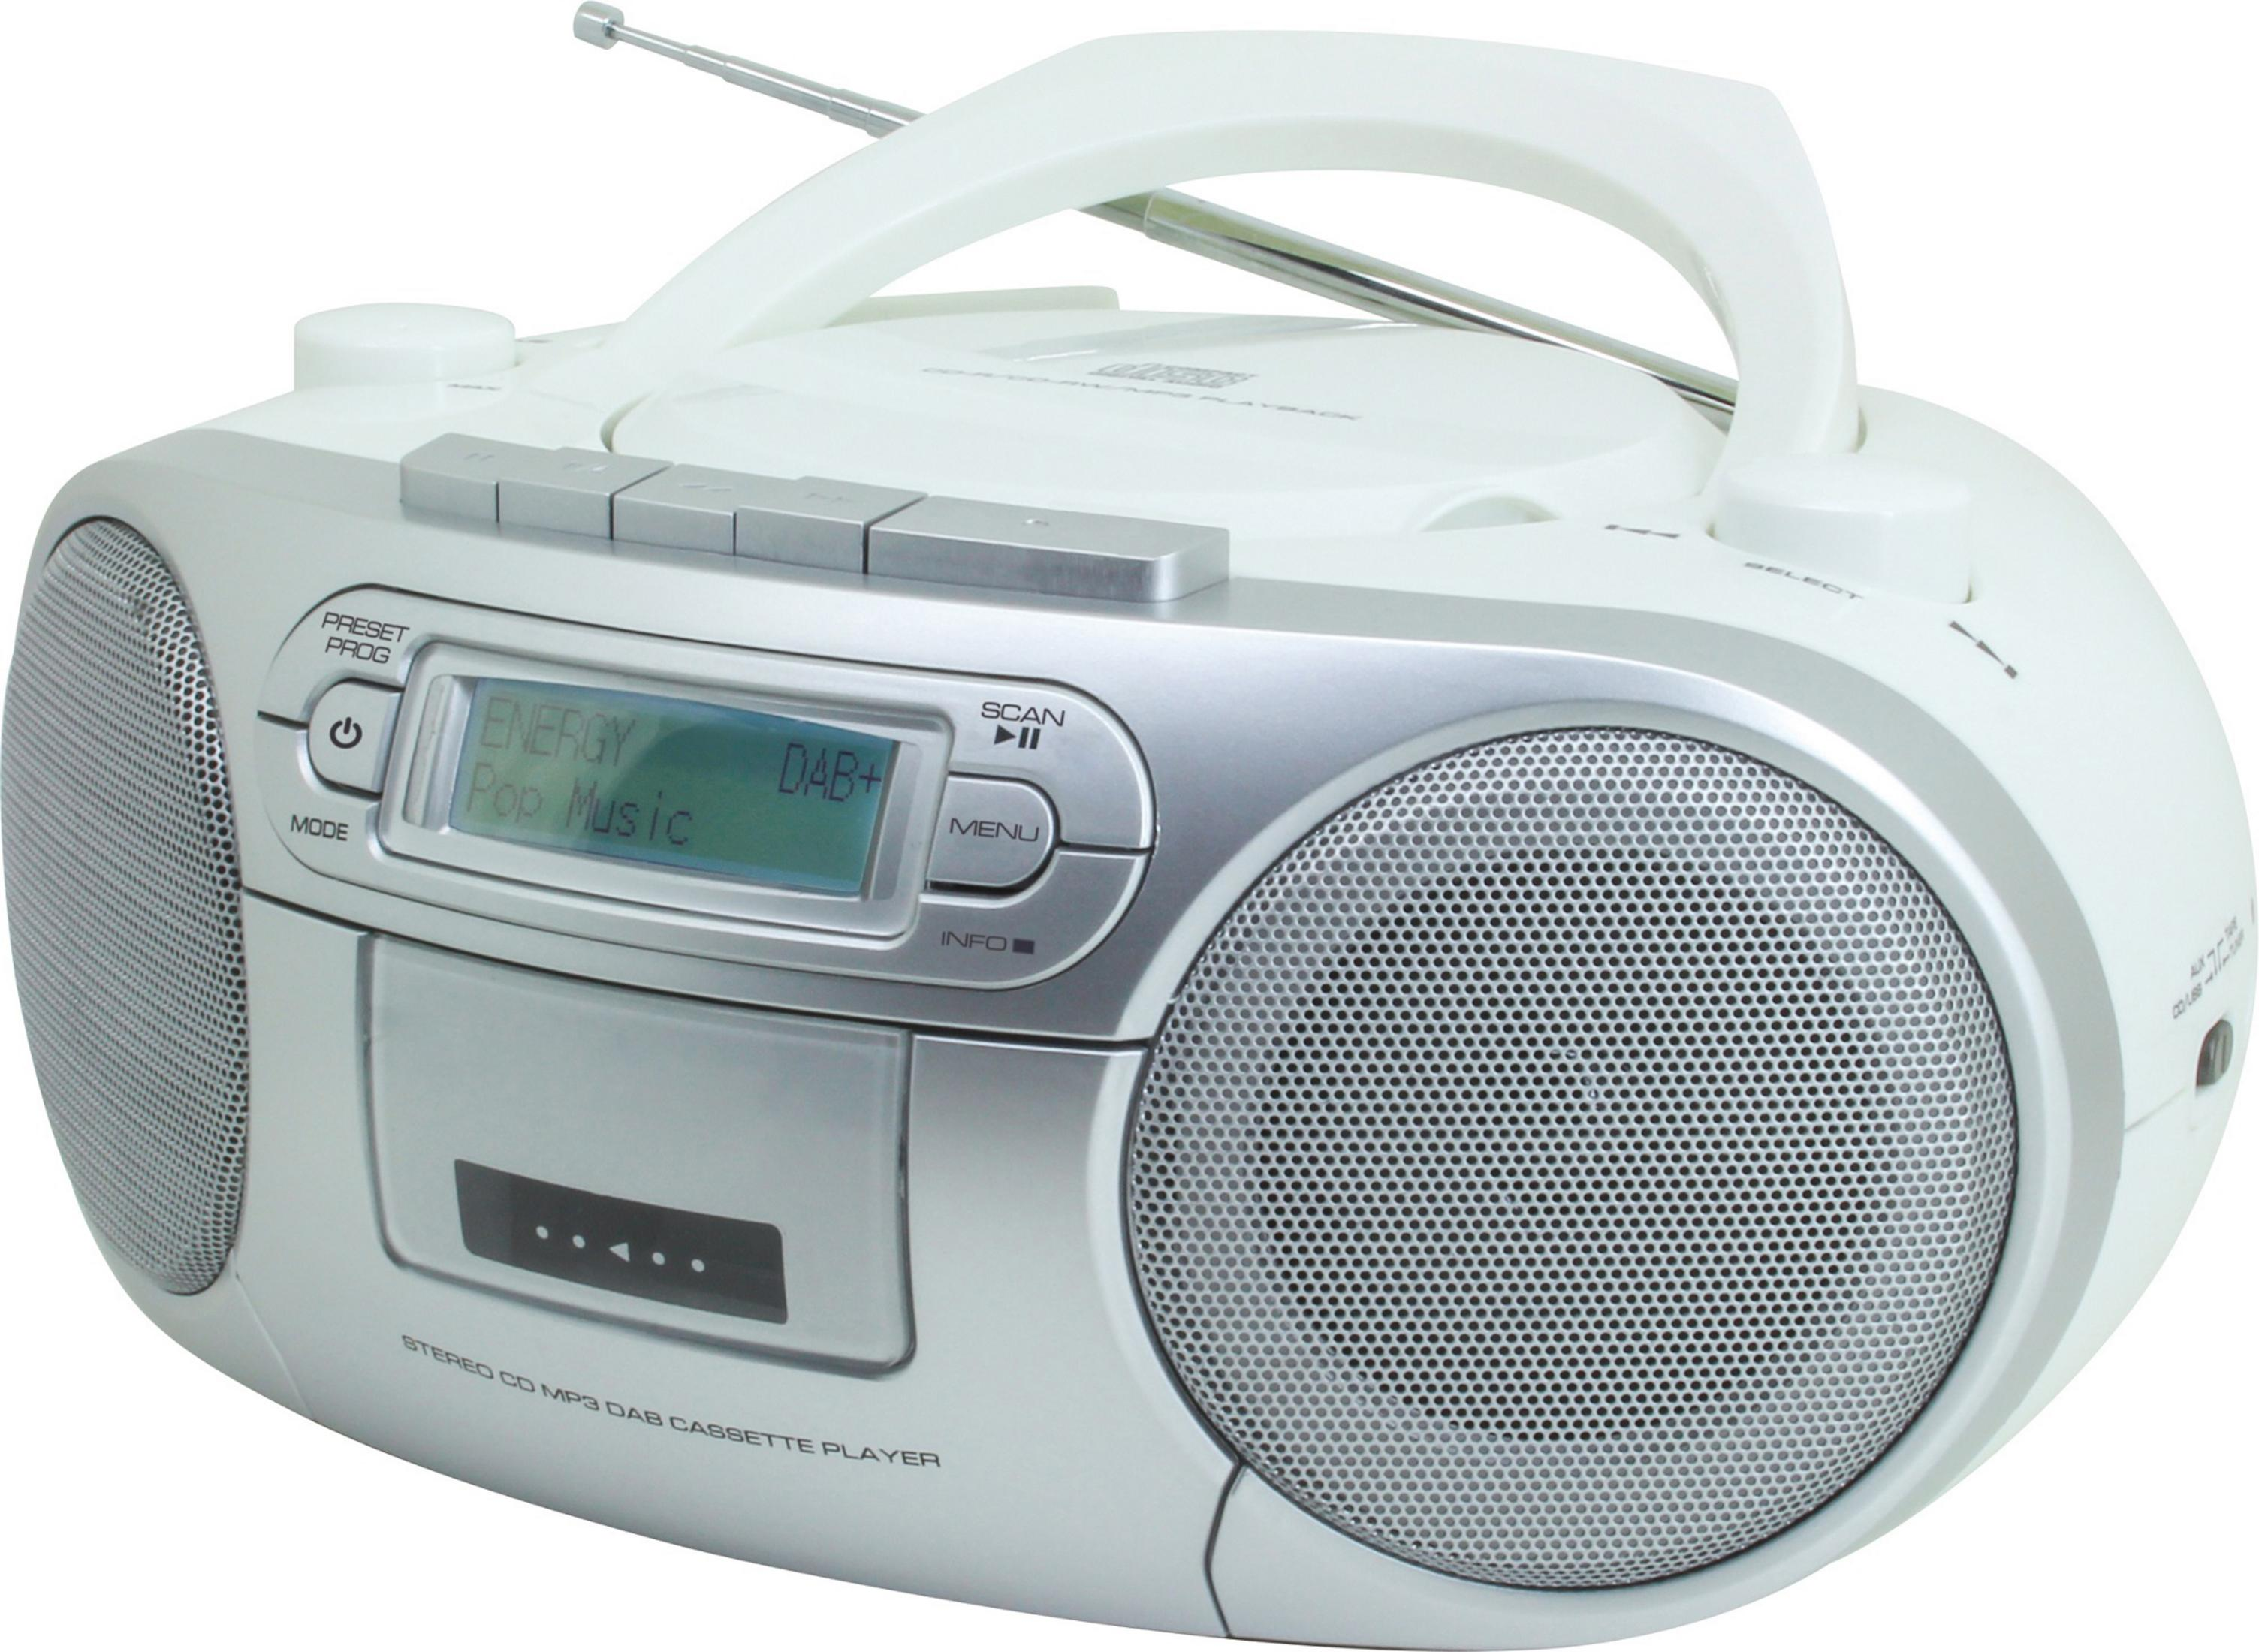 SOUNDMASTER Weiß/Silber Radio, WEISS SCD 7900 WE